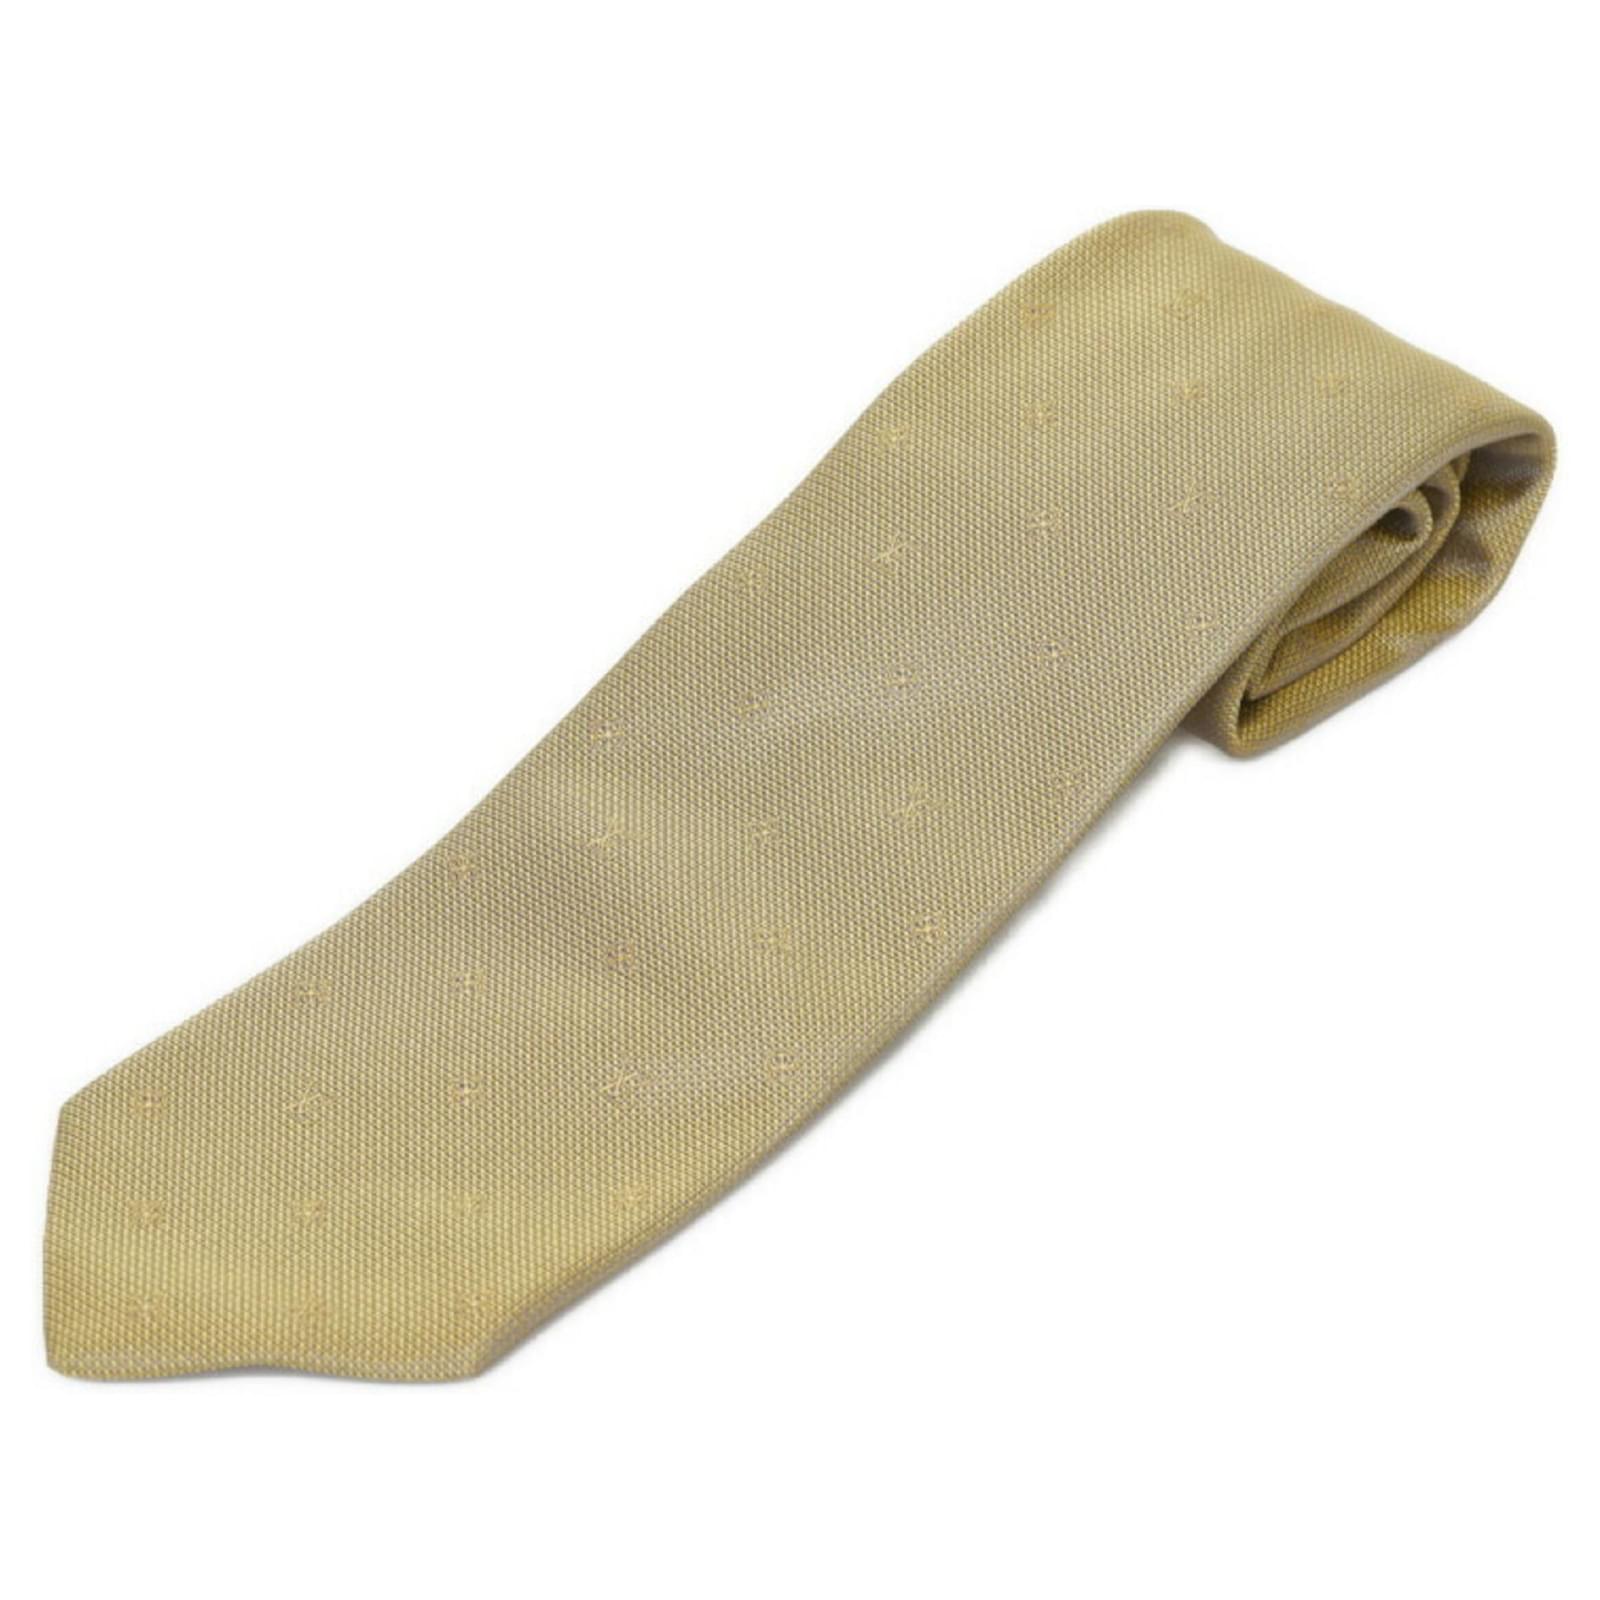 Cravatte Louis vuitton in Seta Giallo - 30785568